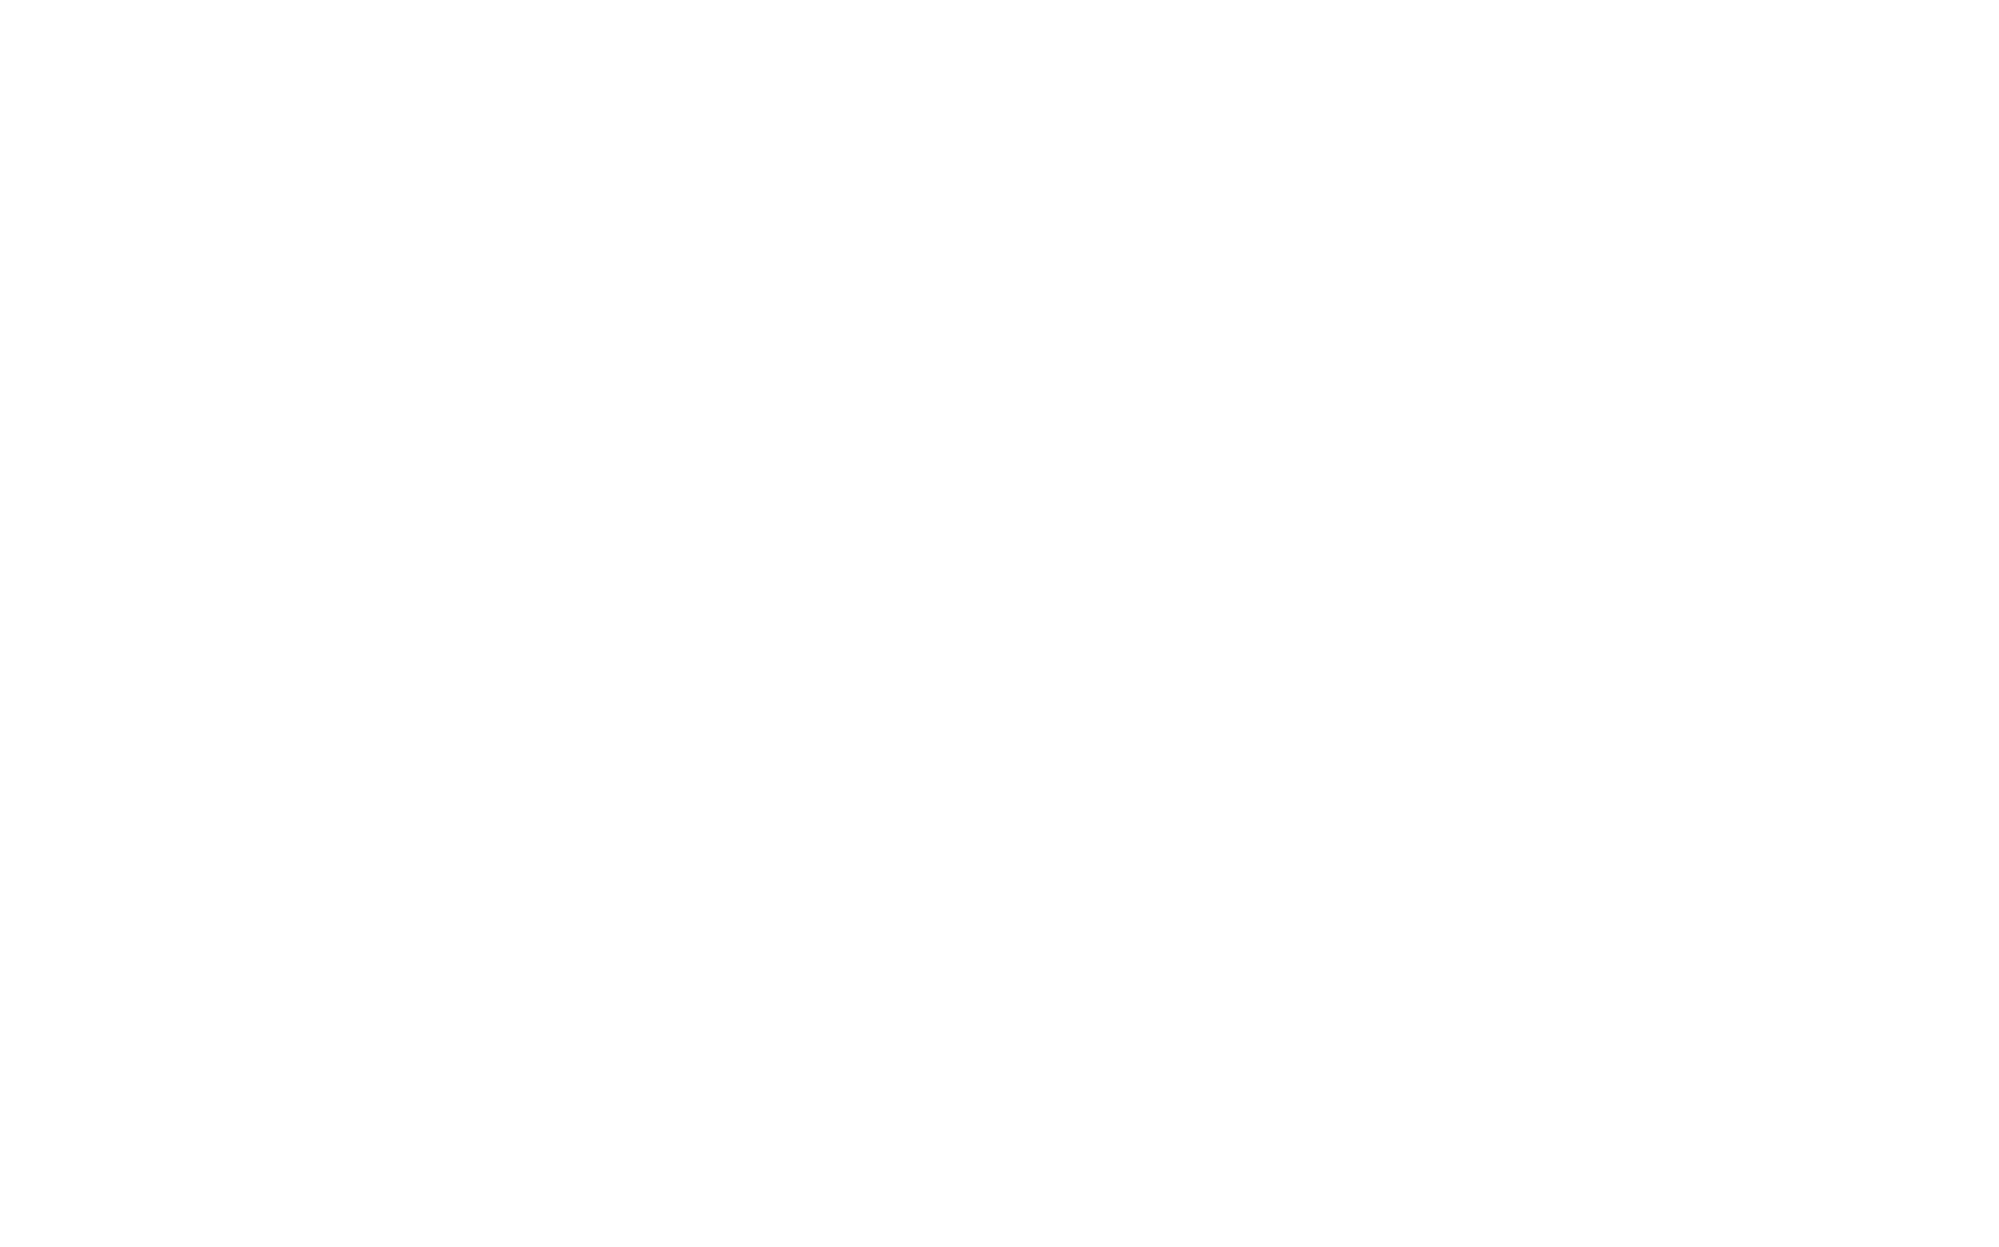 Arab4Techs